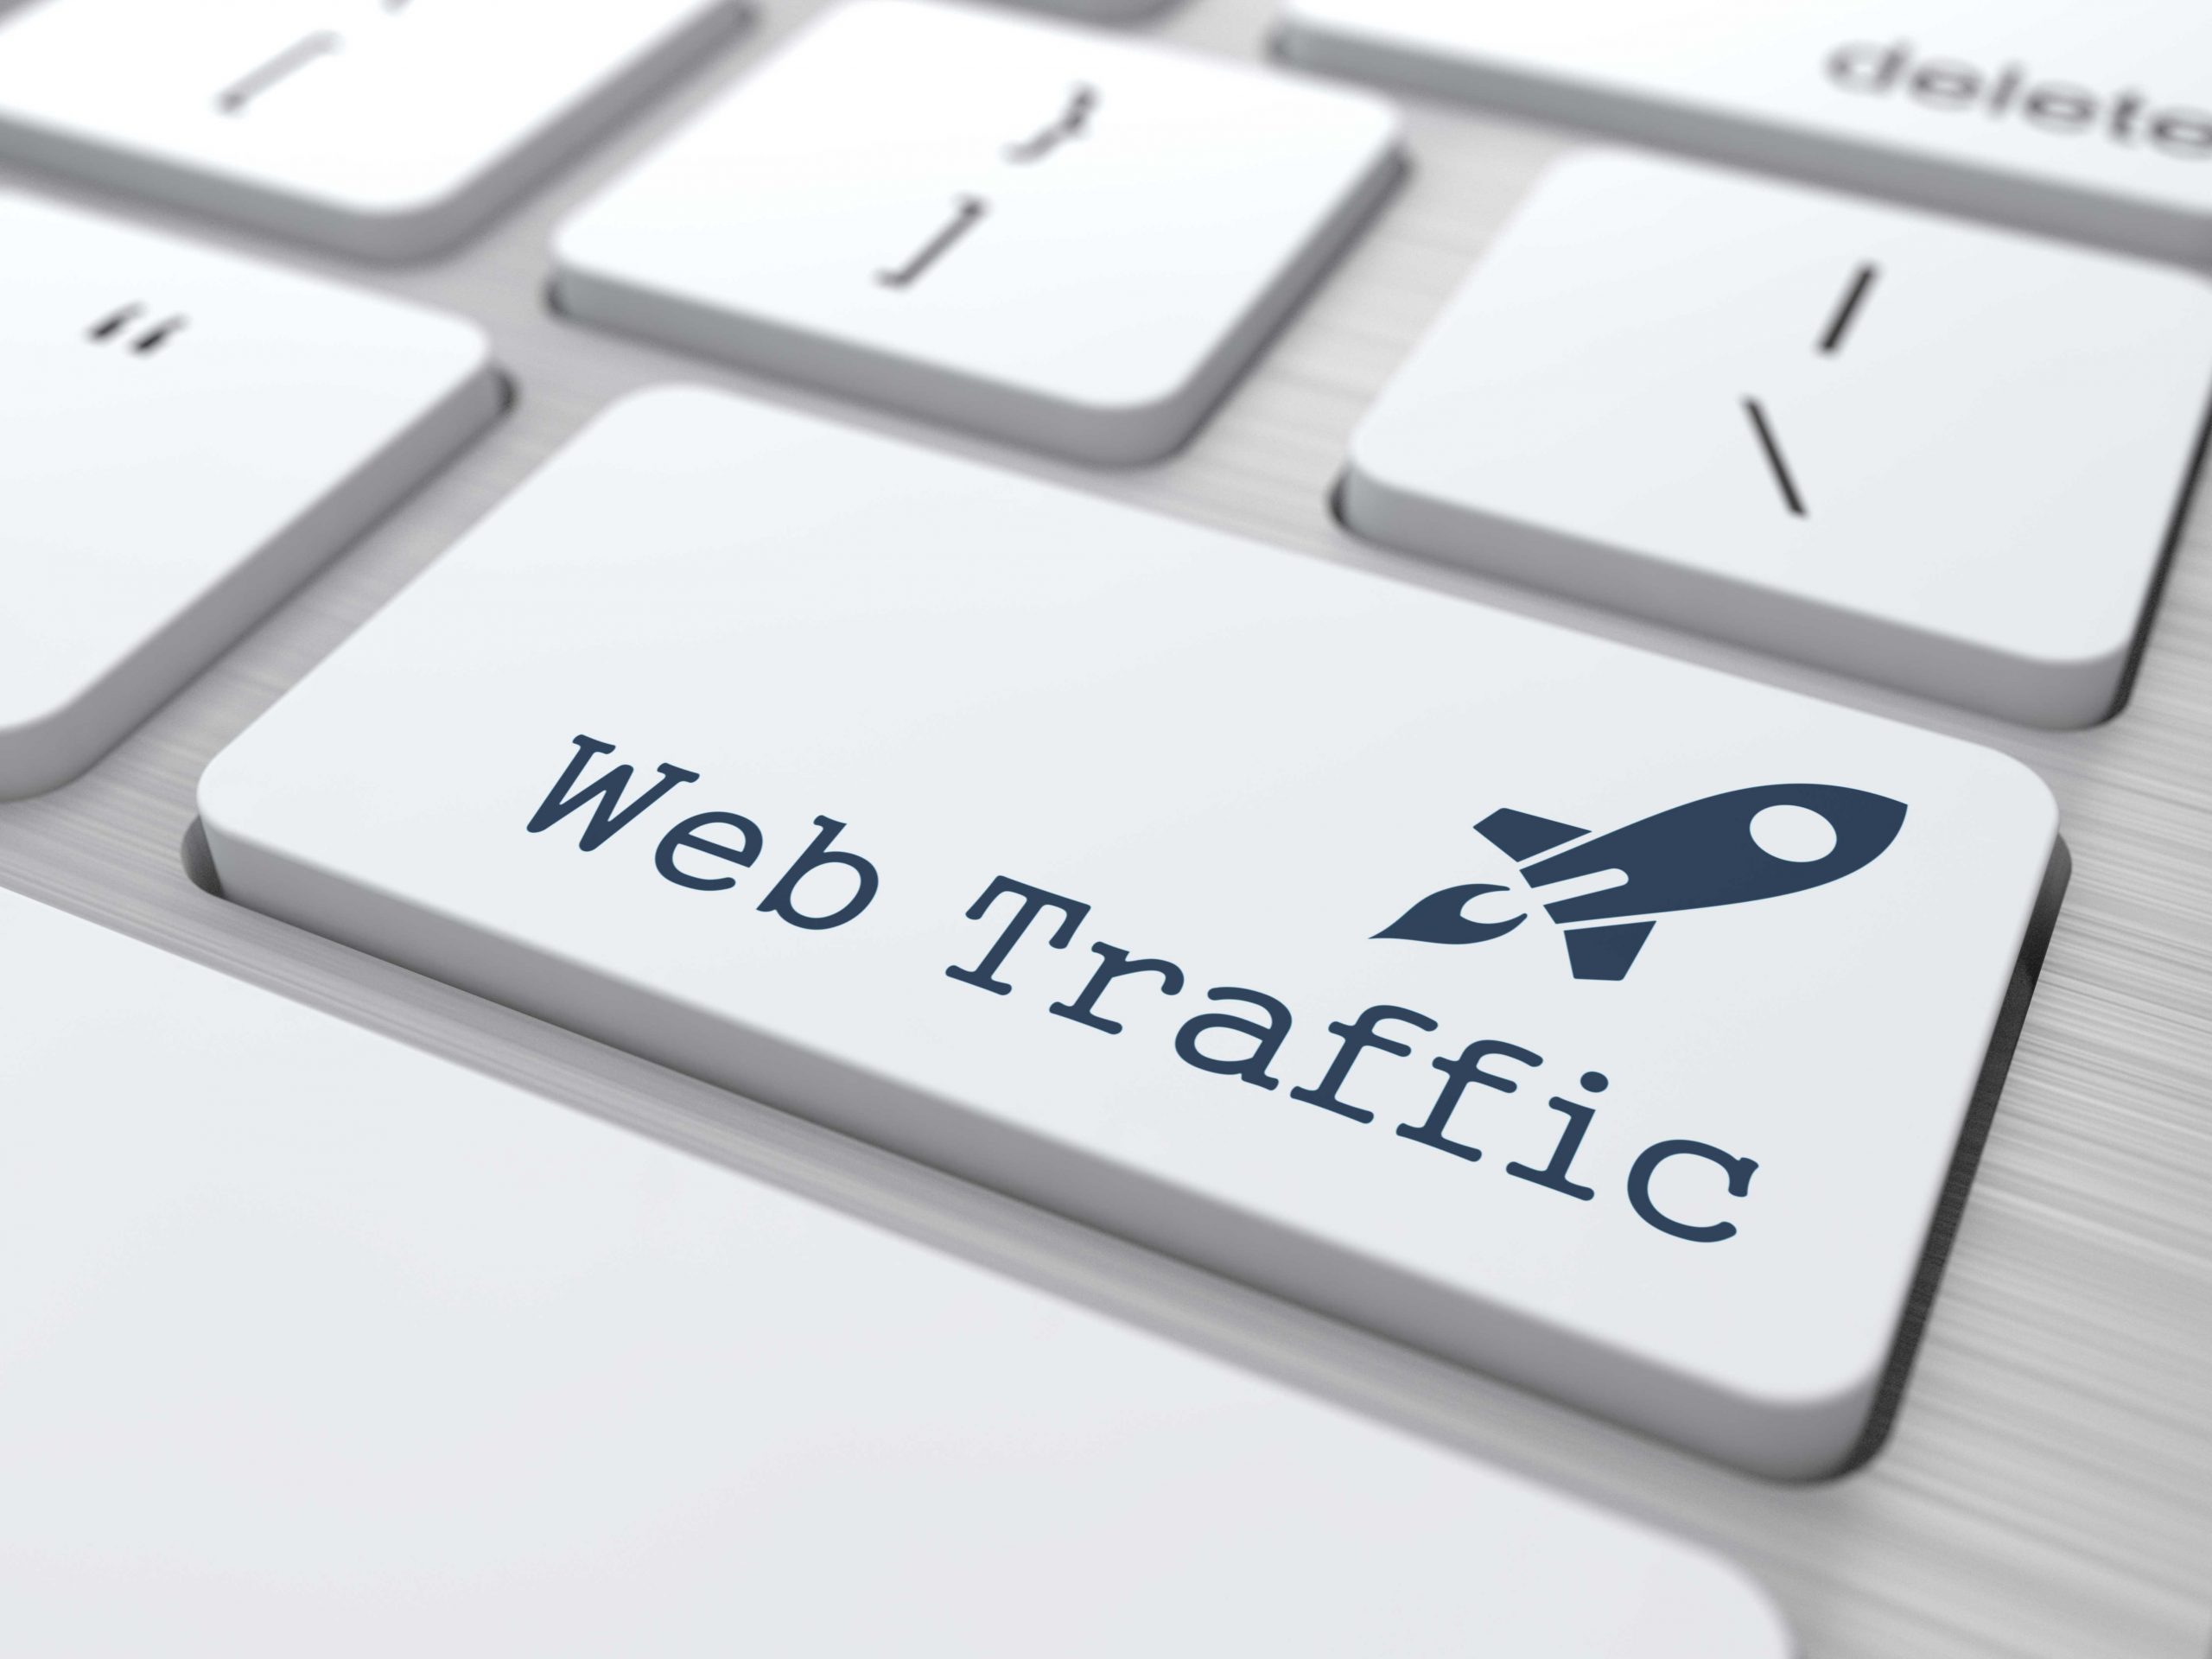 web traffic growth